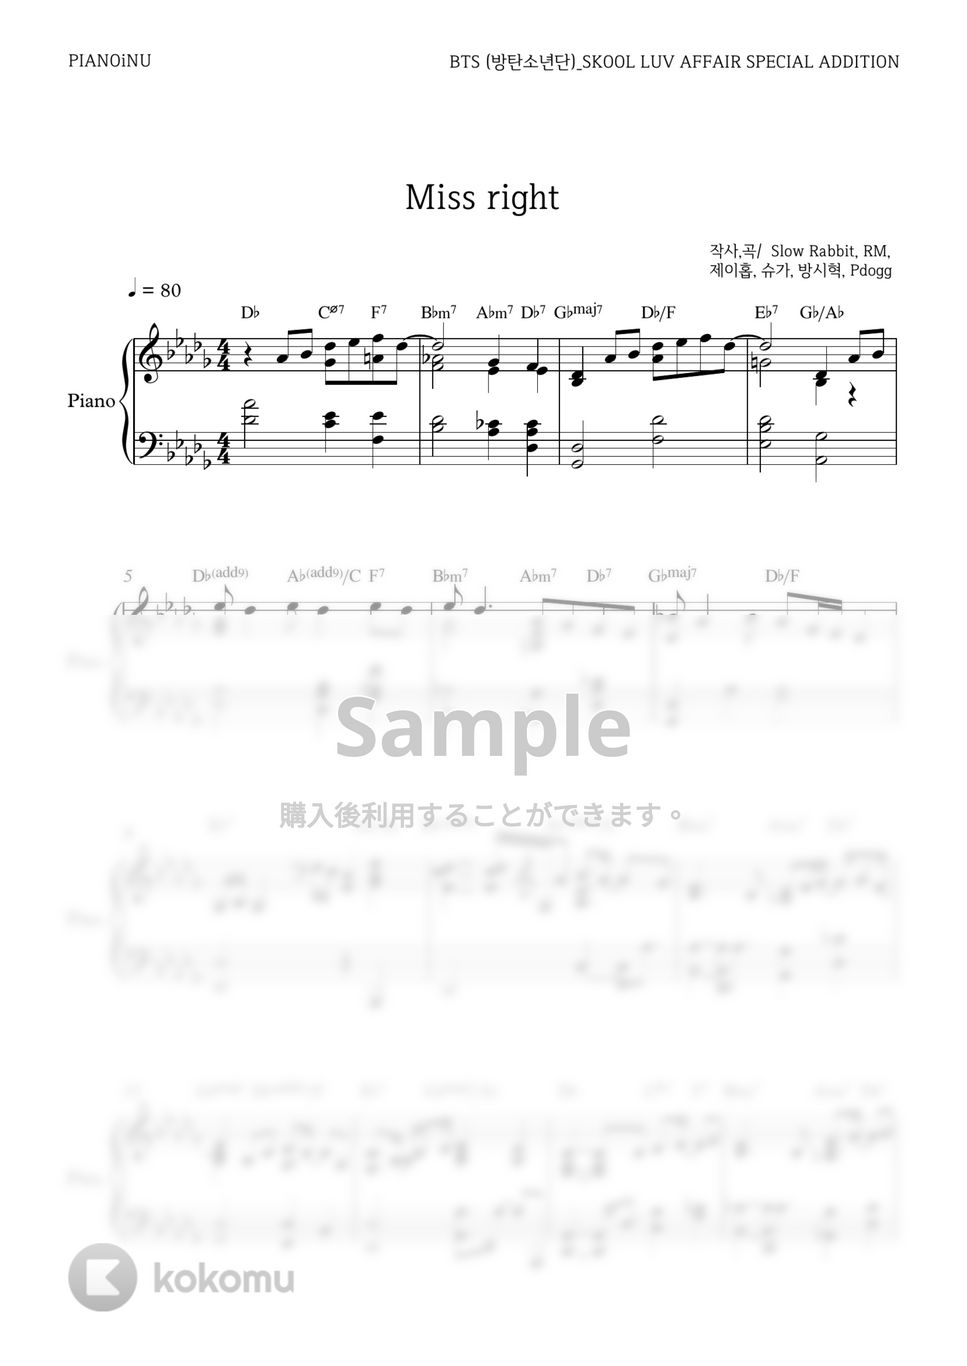 防弾少年団 (BTS) - Miss Right by PIANOiNU